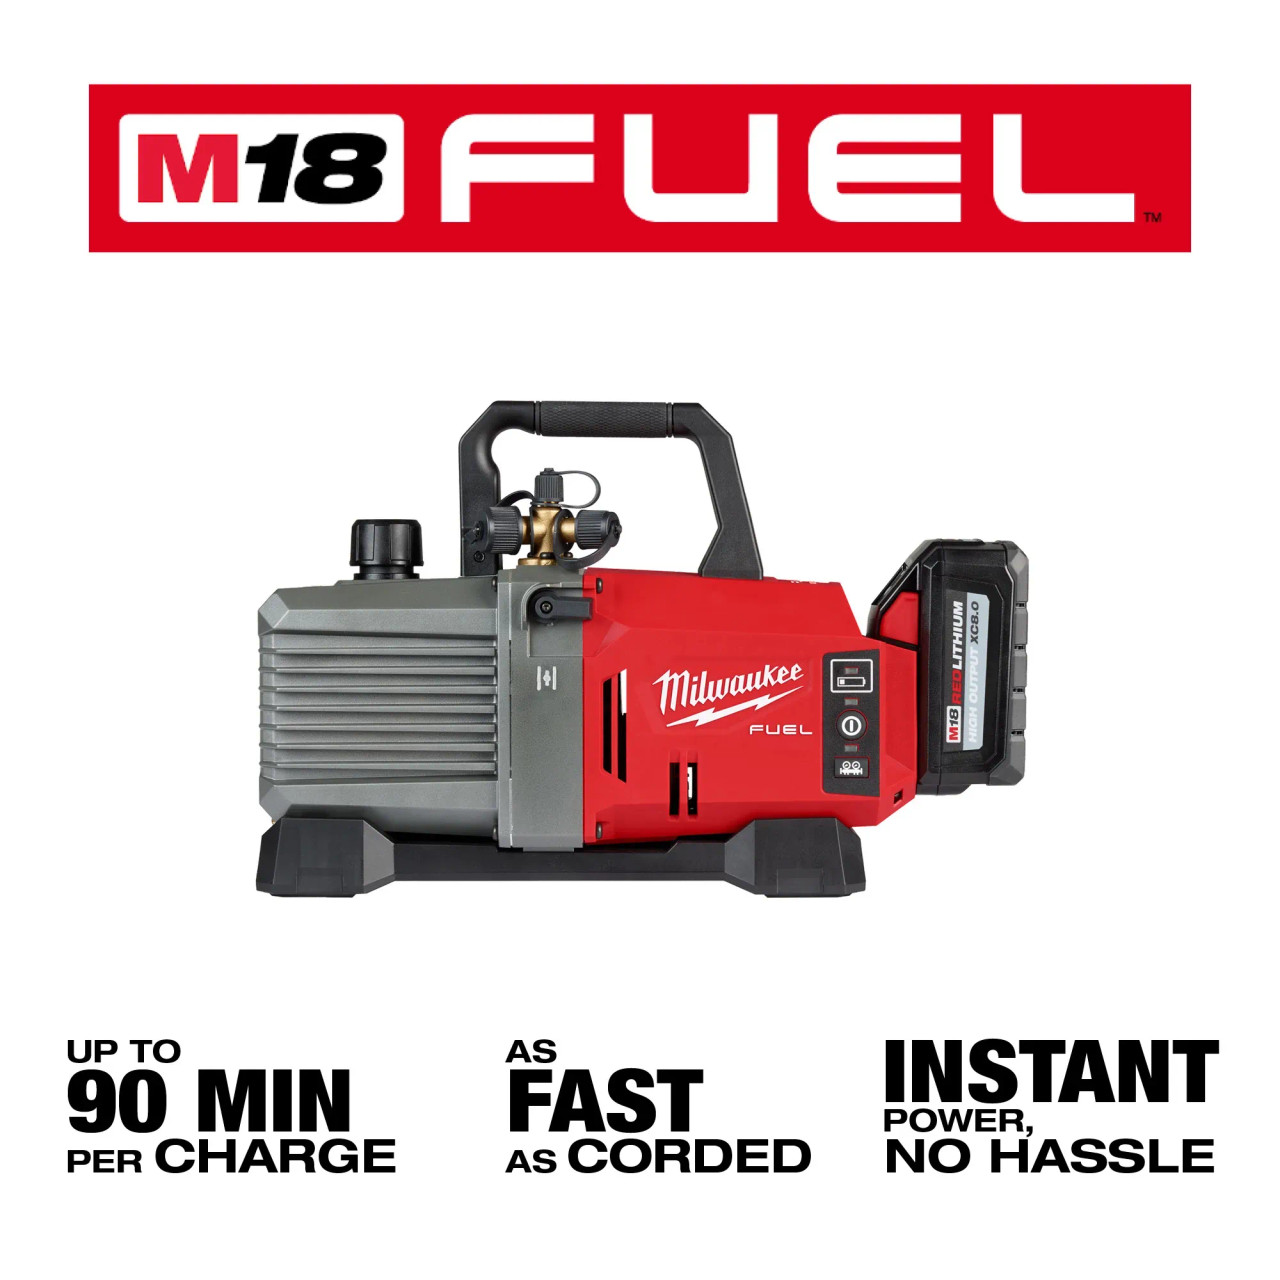 M18 FUEL™ 5 CFM Vacuum Pump Kit